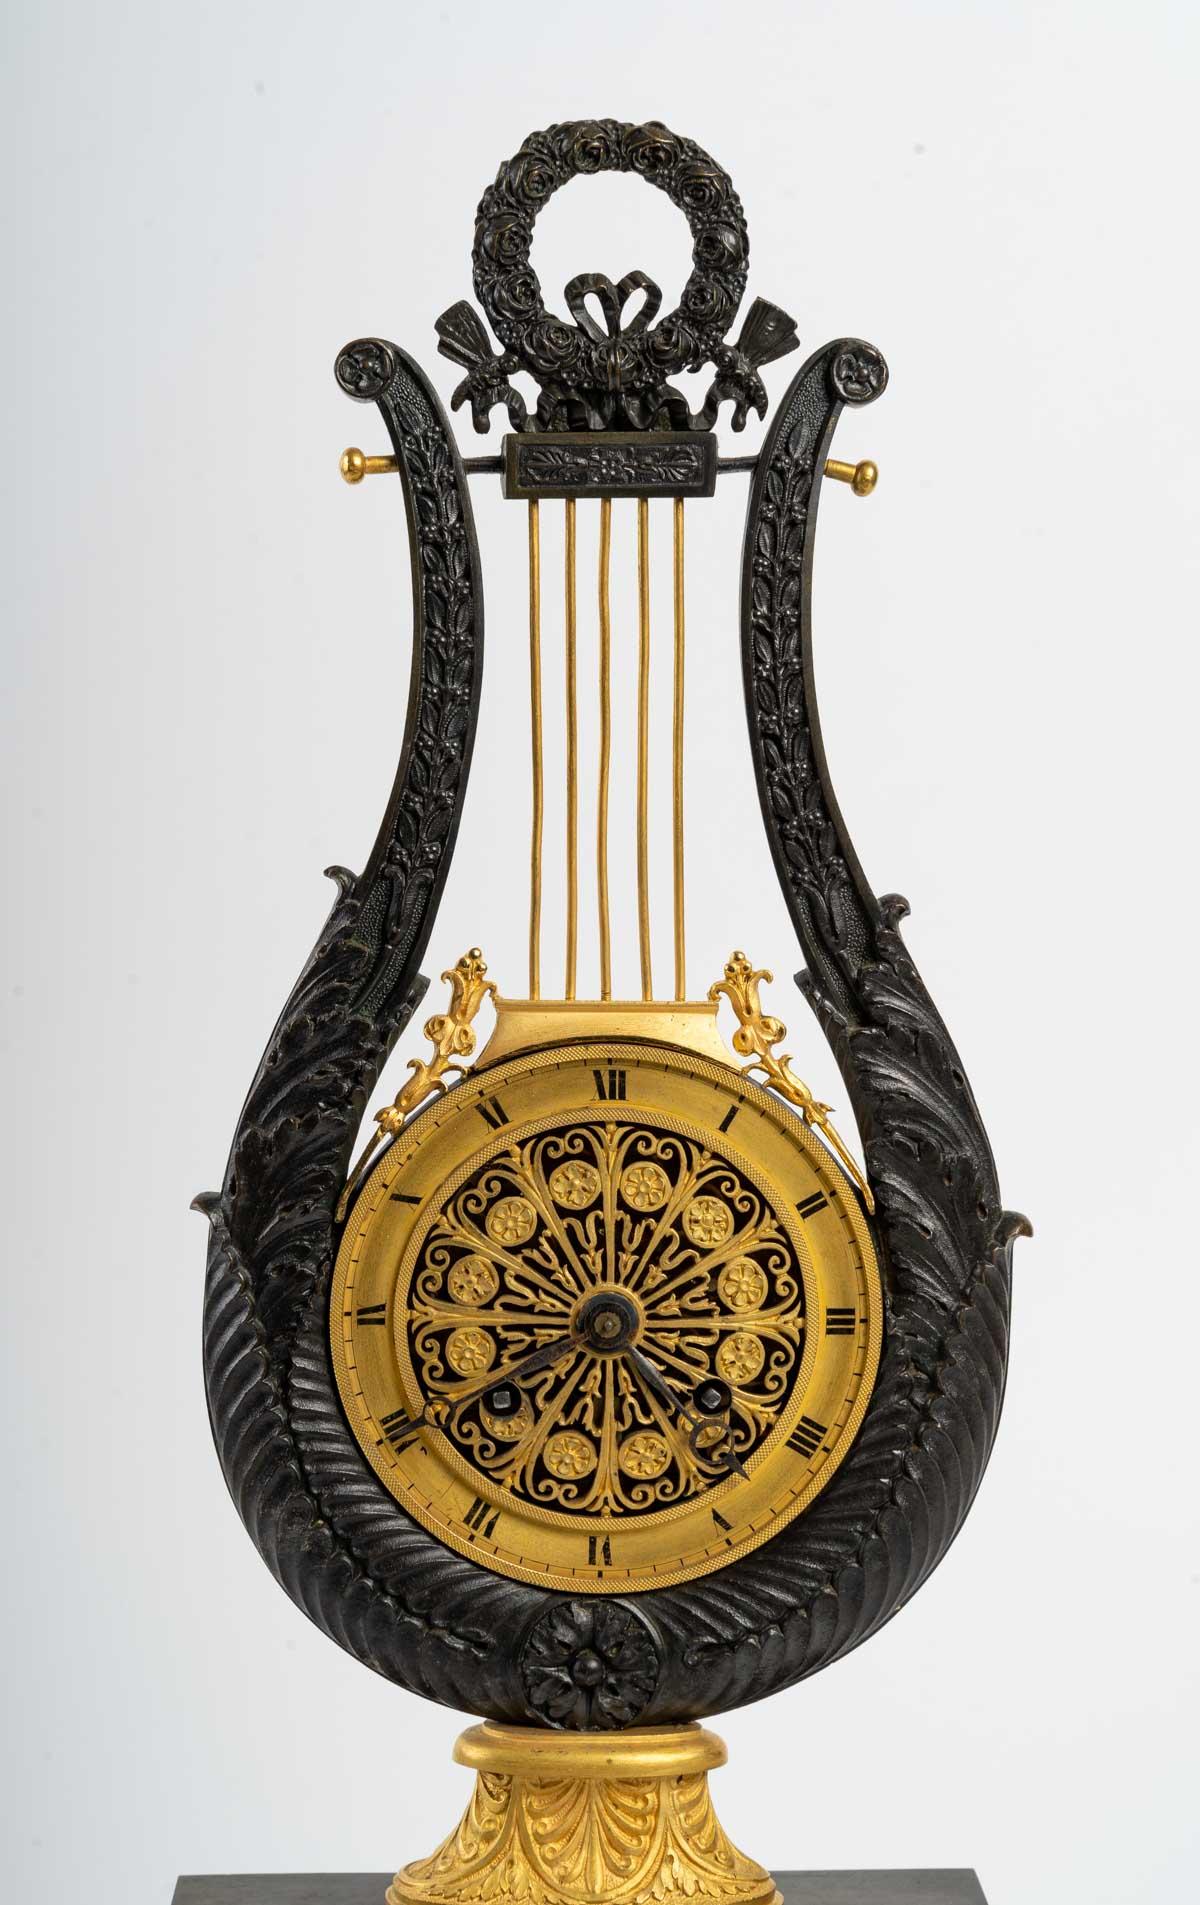 Uhr aus vergoldeter und patinierter Bronze aus der Zeit Karls X., 19. Jahrhundert.
Maße: H 43 cm, B 19 cm, T 10 cm.